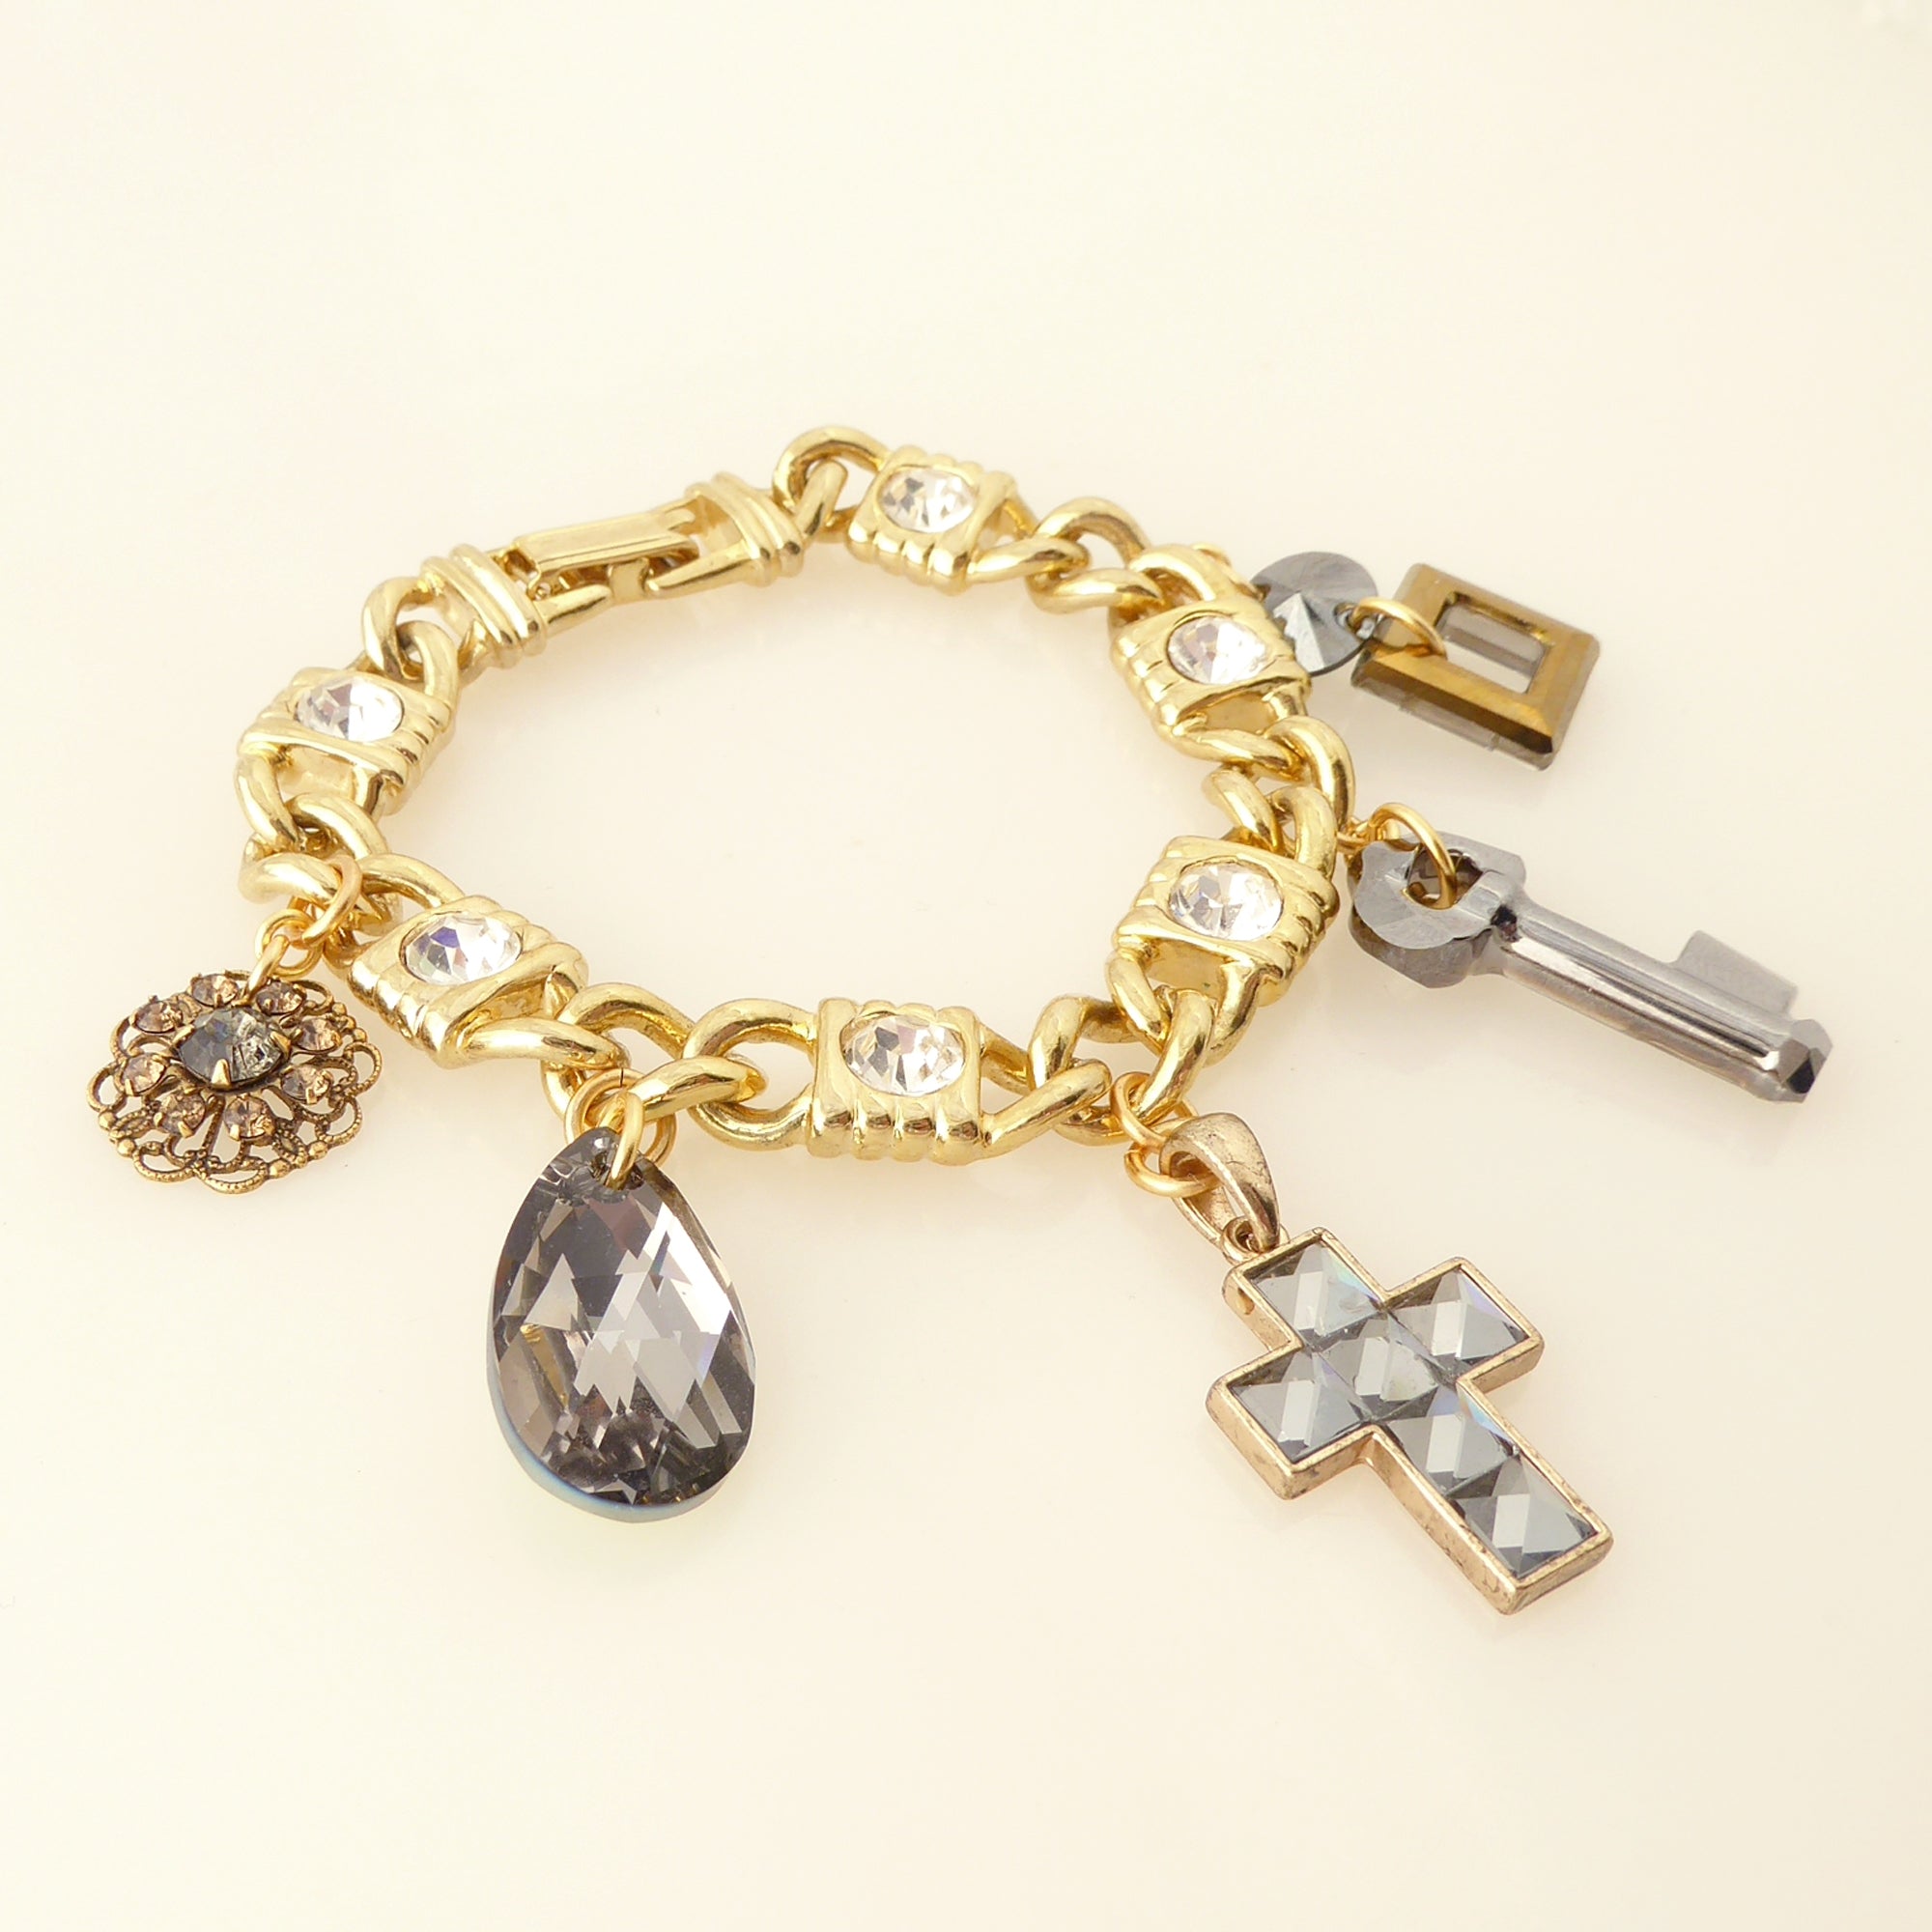 Gray crystal charm bracelet by Jenny Dayco 2